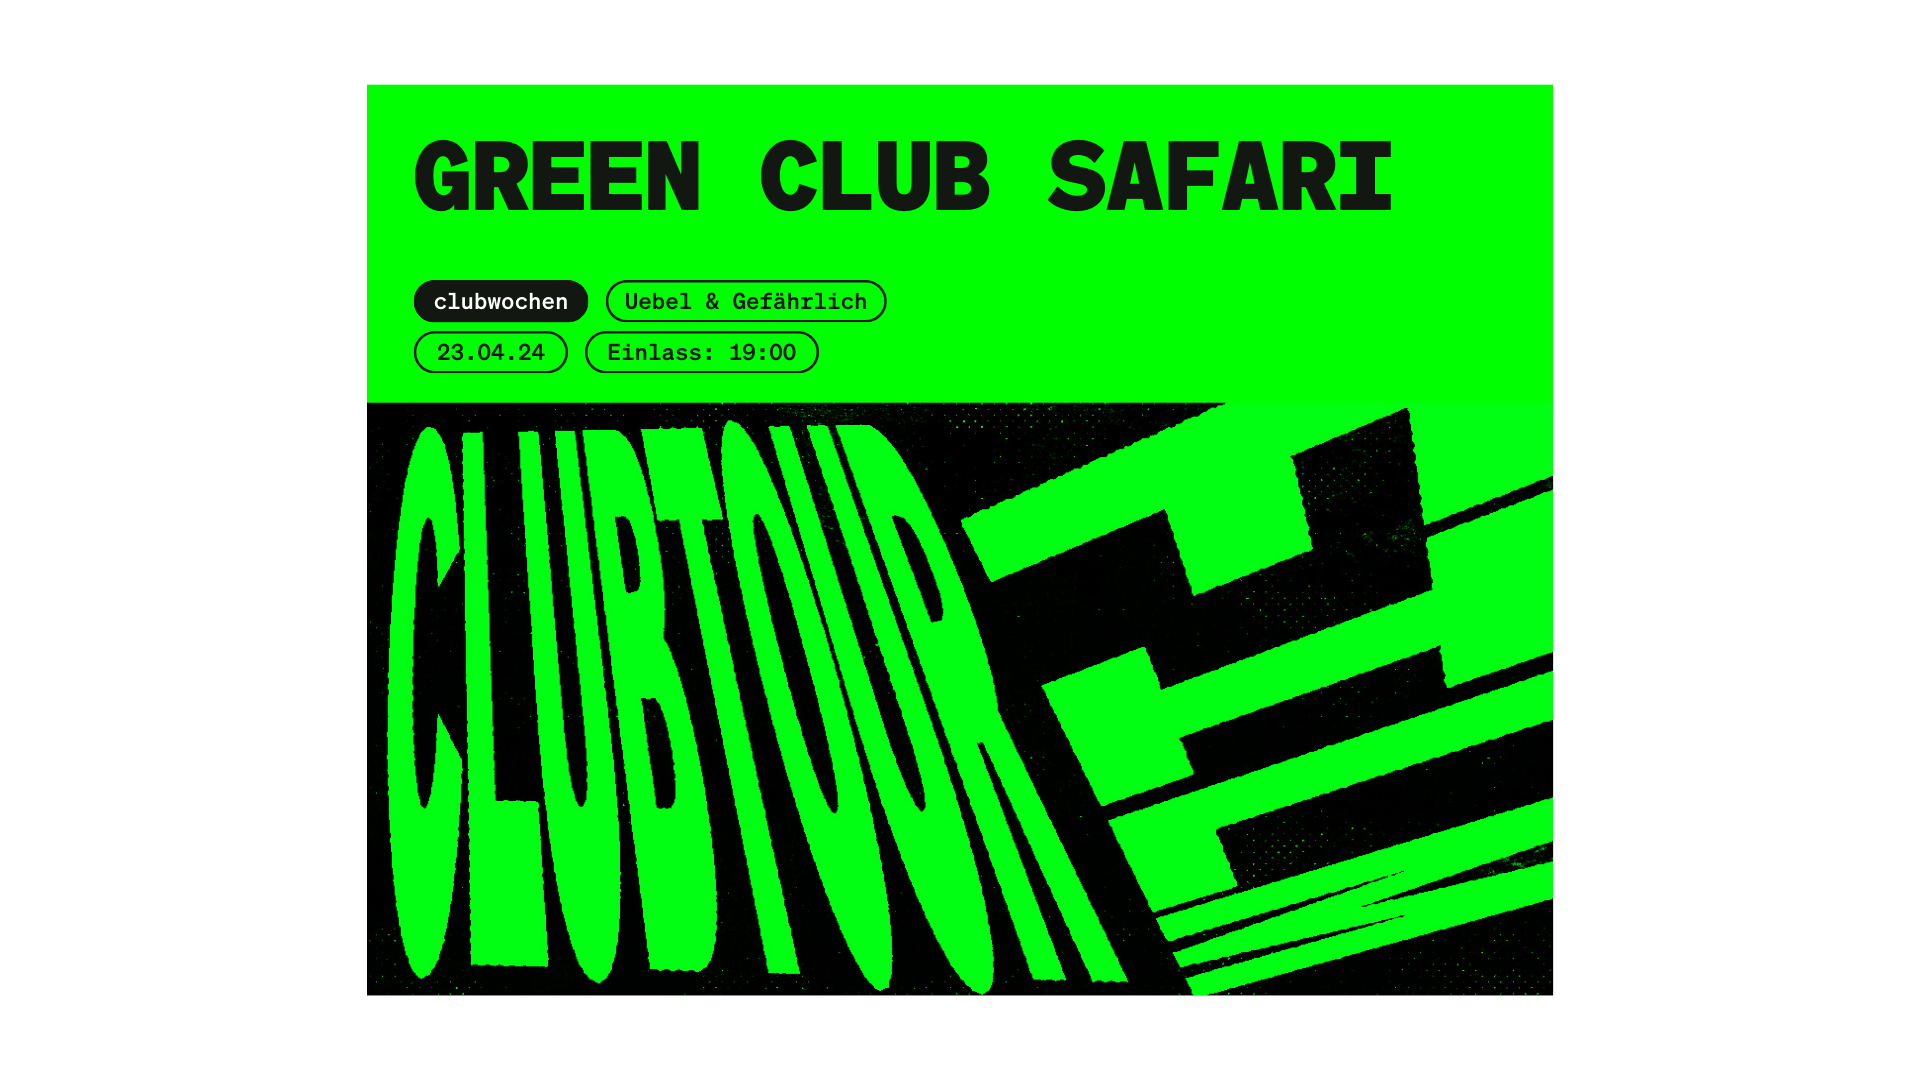 Green Club Safari bei den clubkombinat Clubwochen: Wie das Uebel & Gefährlich innivativ Energie spart